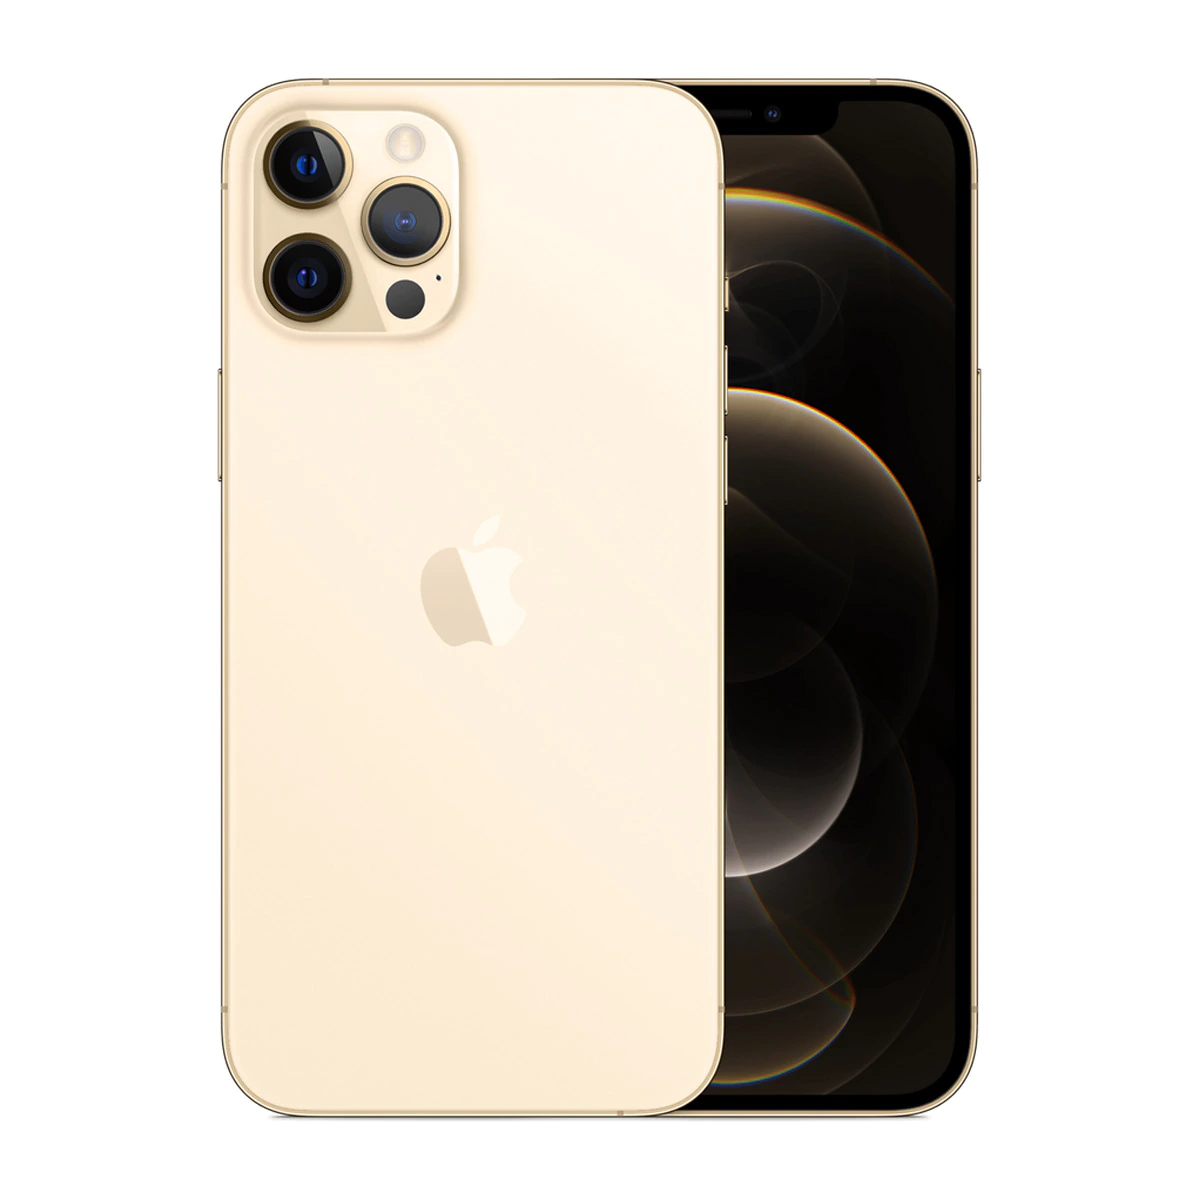 Apple iPhone 12 Pro Max 512 GB Gold móvil libre